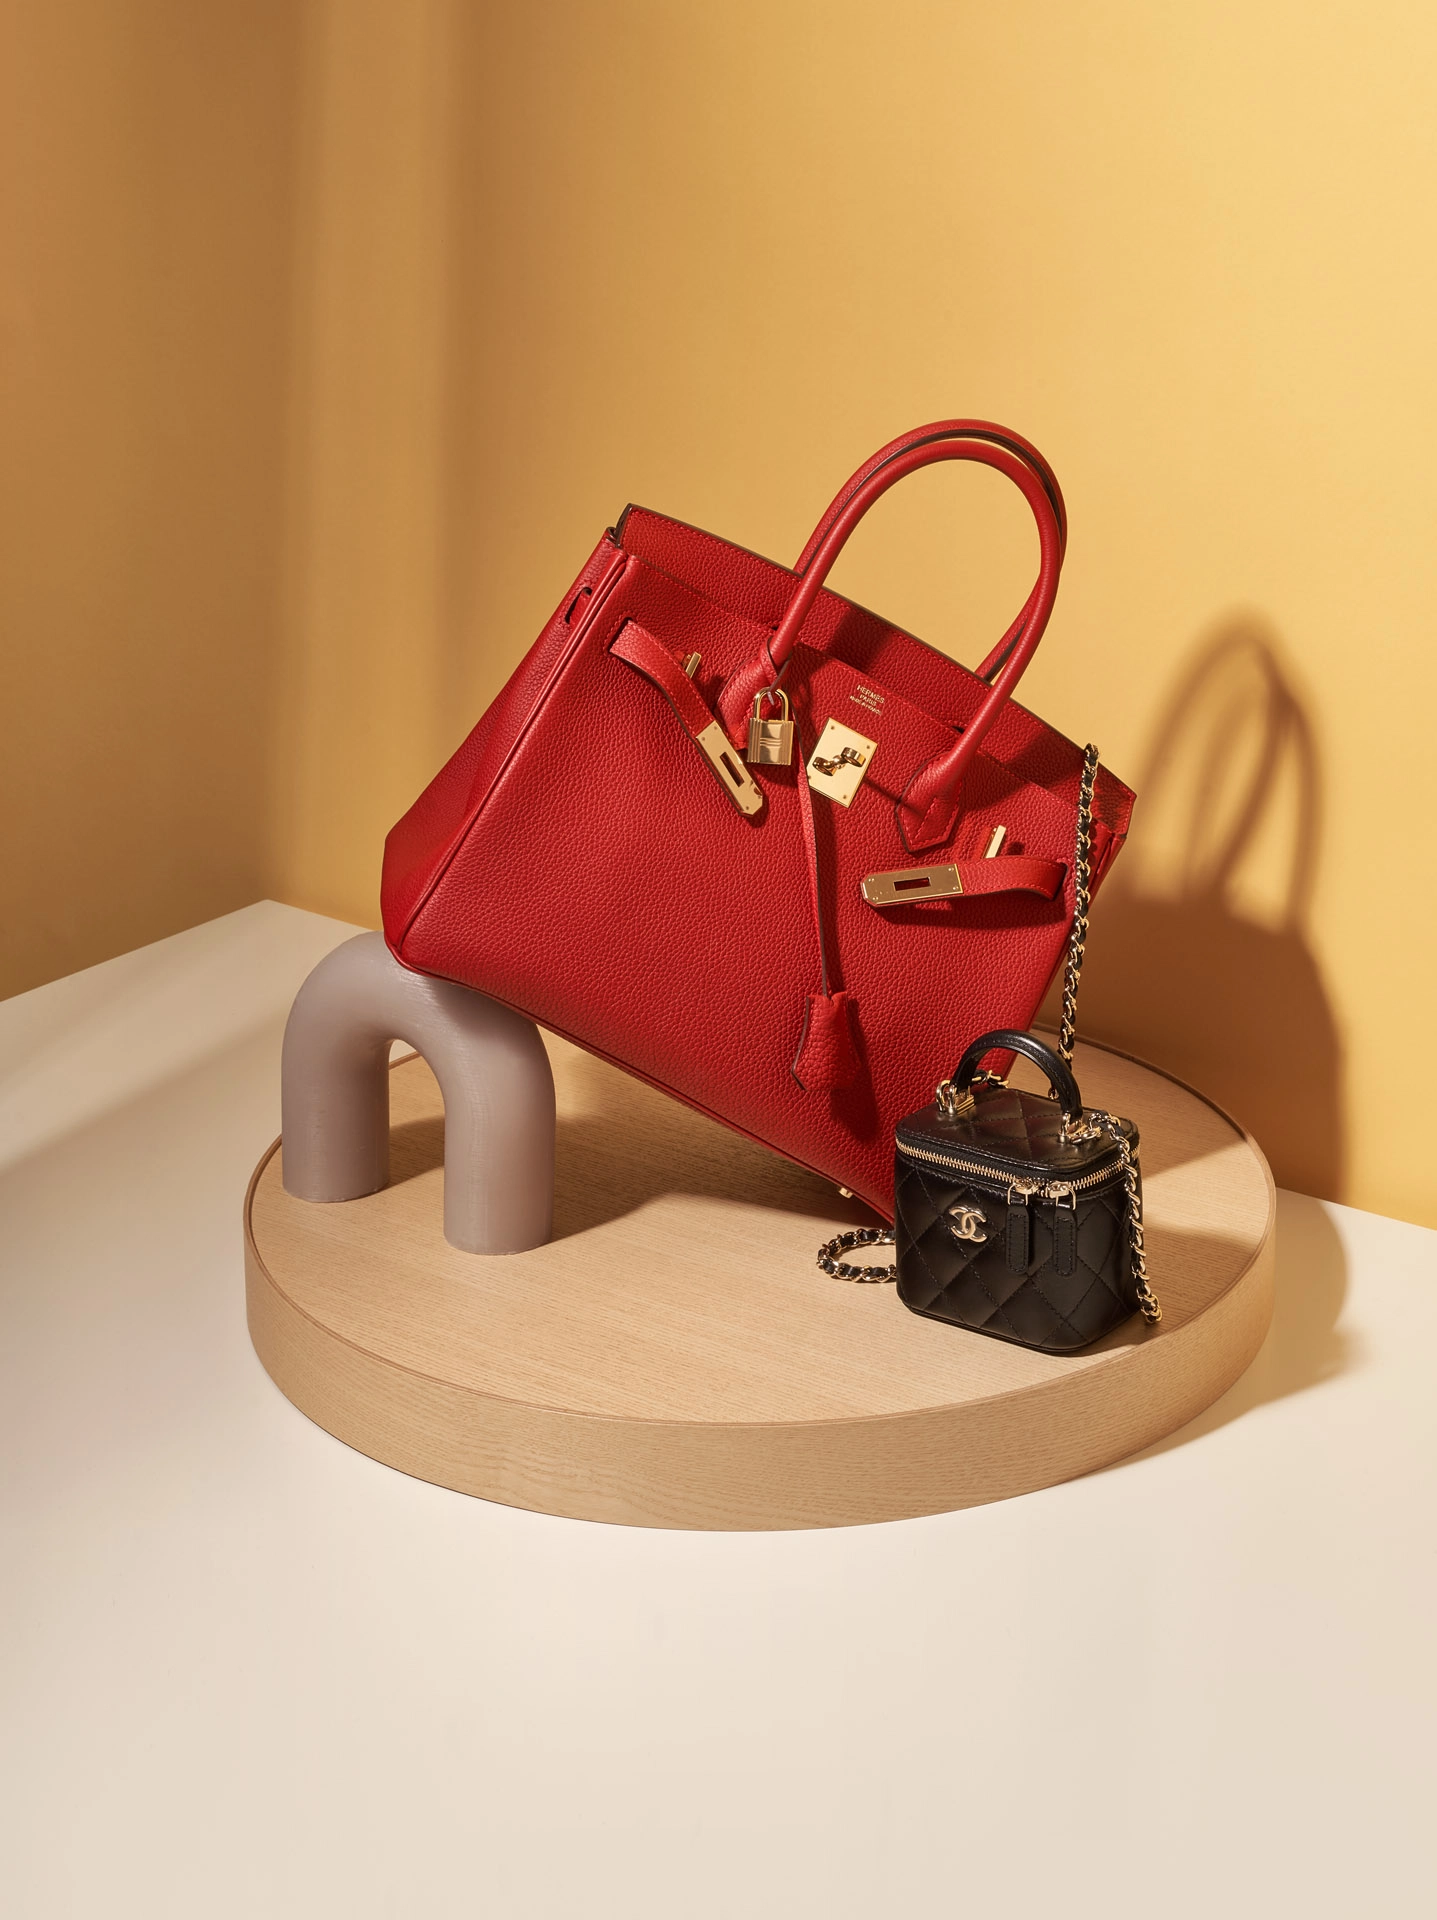 Louis Vuittons neue Taschen: Sechs Designer zeigen ihre Kreationen